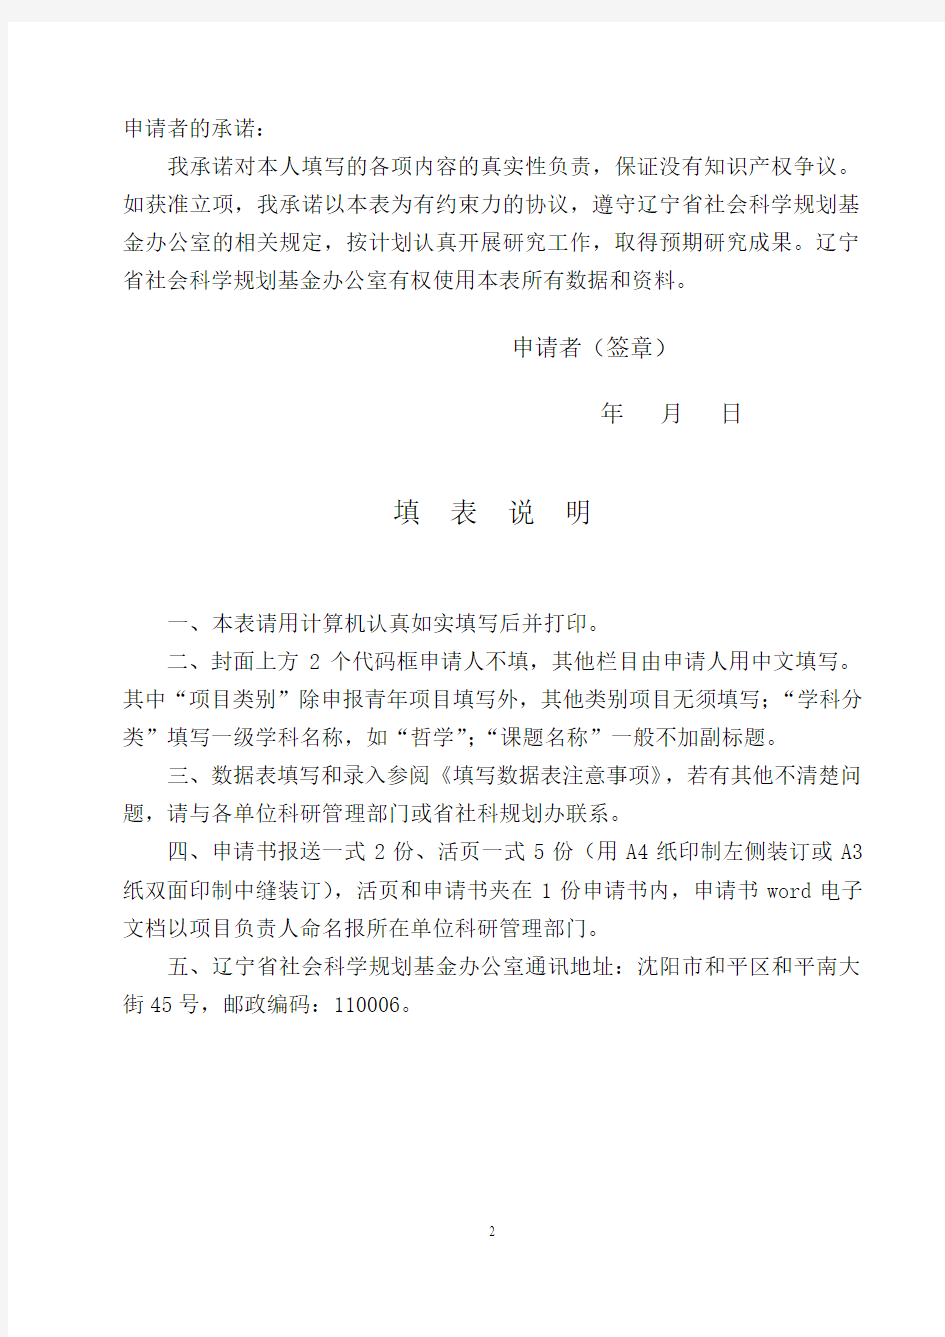 辽宁省社会科学规划基金项目申请书(2015年修订)